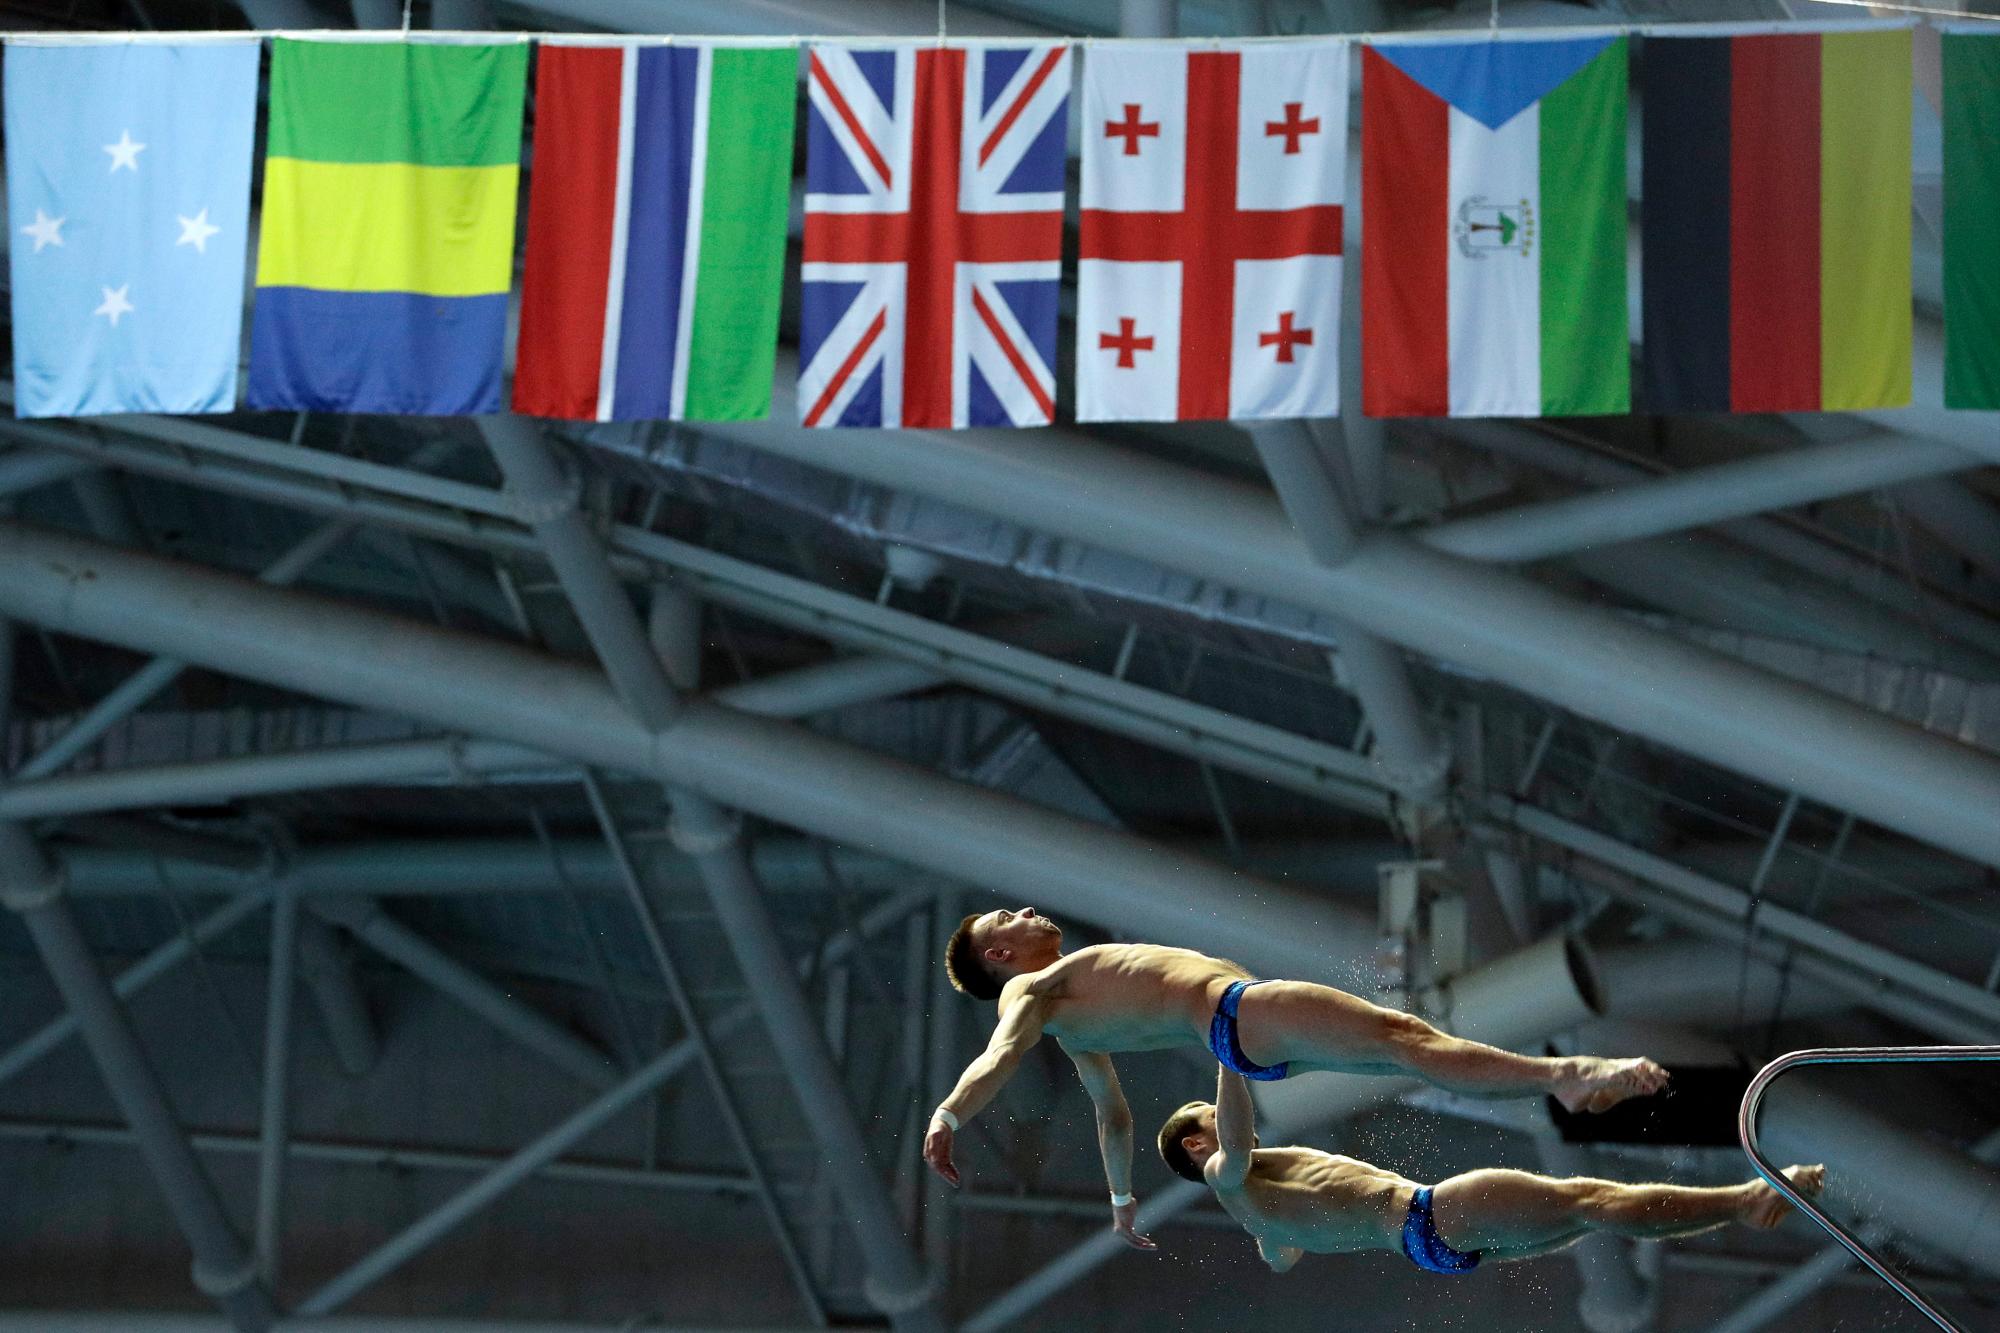  Aleksandr Bondar y Viktor Minibaev de Rusia compiten en la competencia preliminar de 10 metros de plataforma sincronizada de buceo en el Campeonato Mundial de Natación en Gwangju, Corea del Sur, el lunes 15 de julio de 2019. 